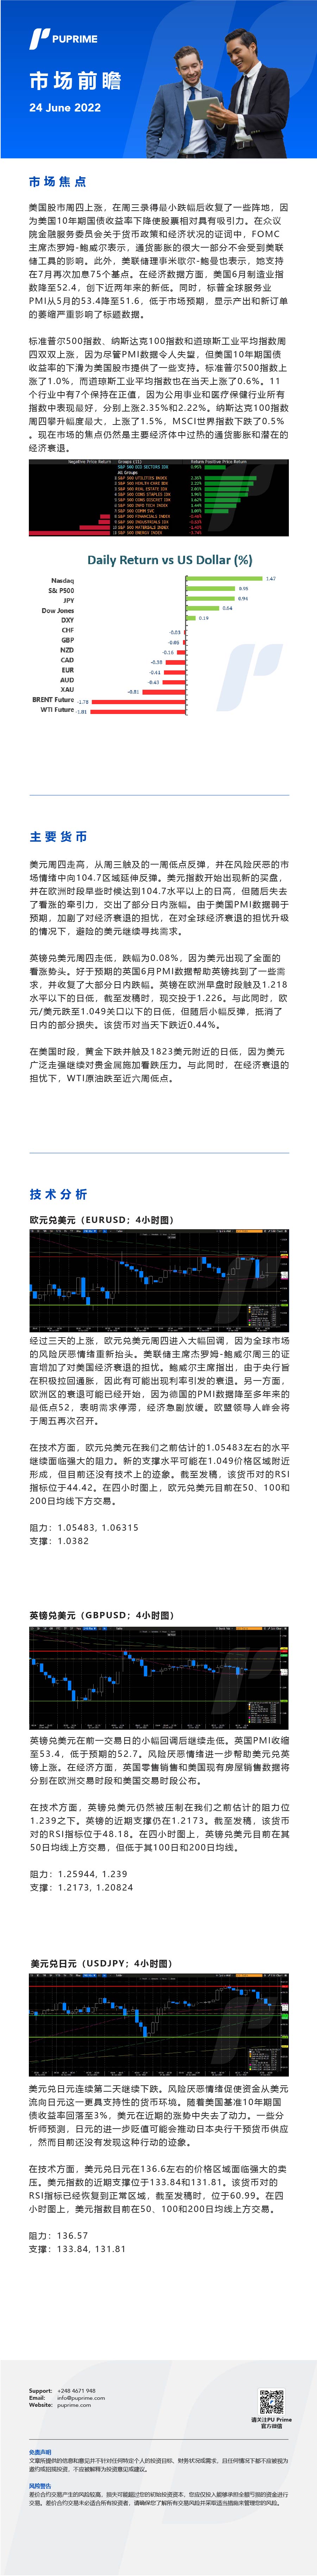 24062022 Daily Market Analysis__CHN.jpg